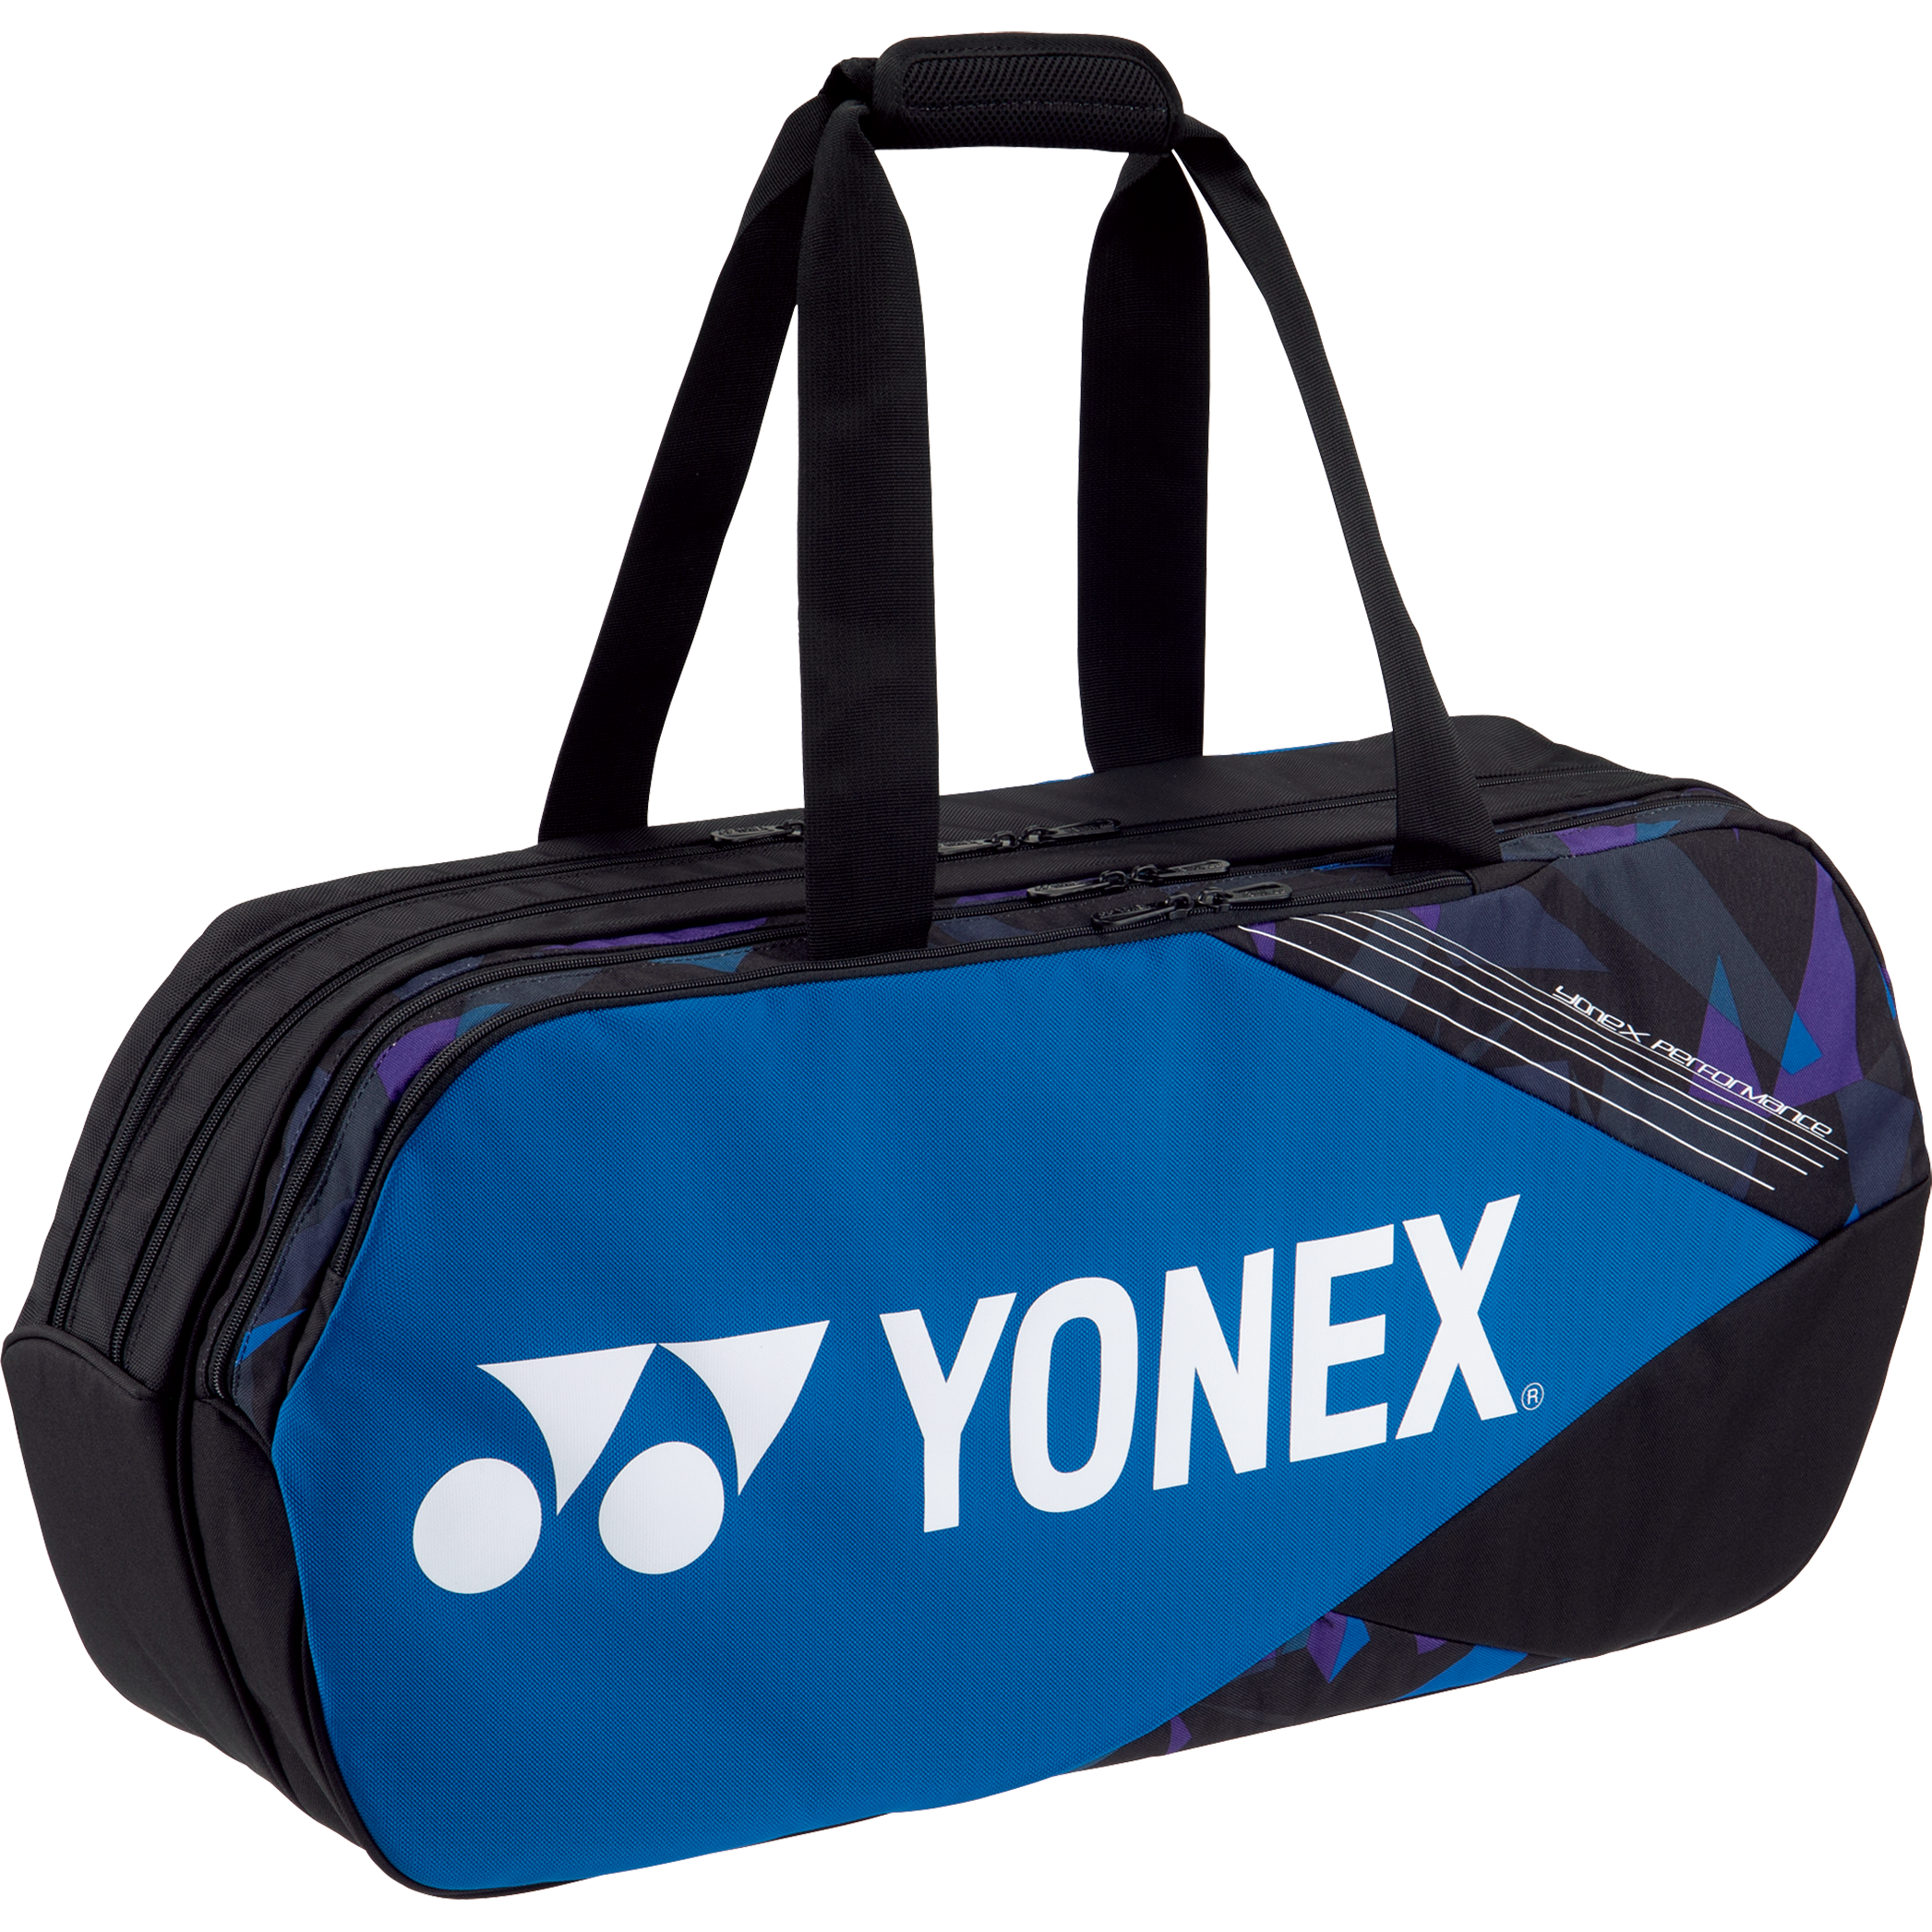 Yonex Pro Tournament Bag BA92231W - Deep Blue